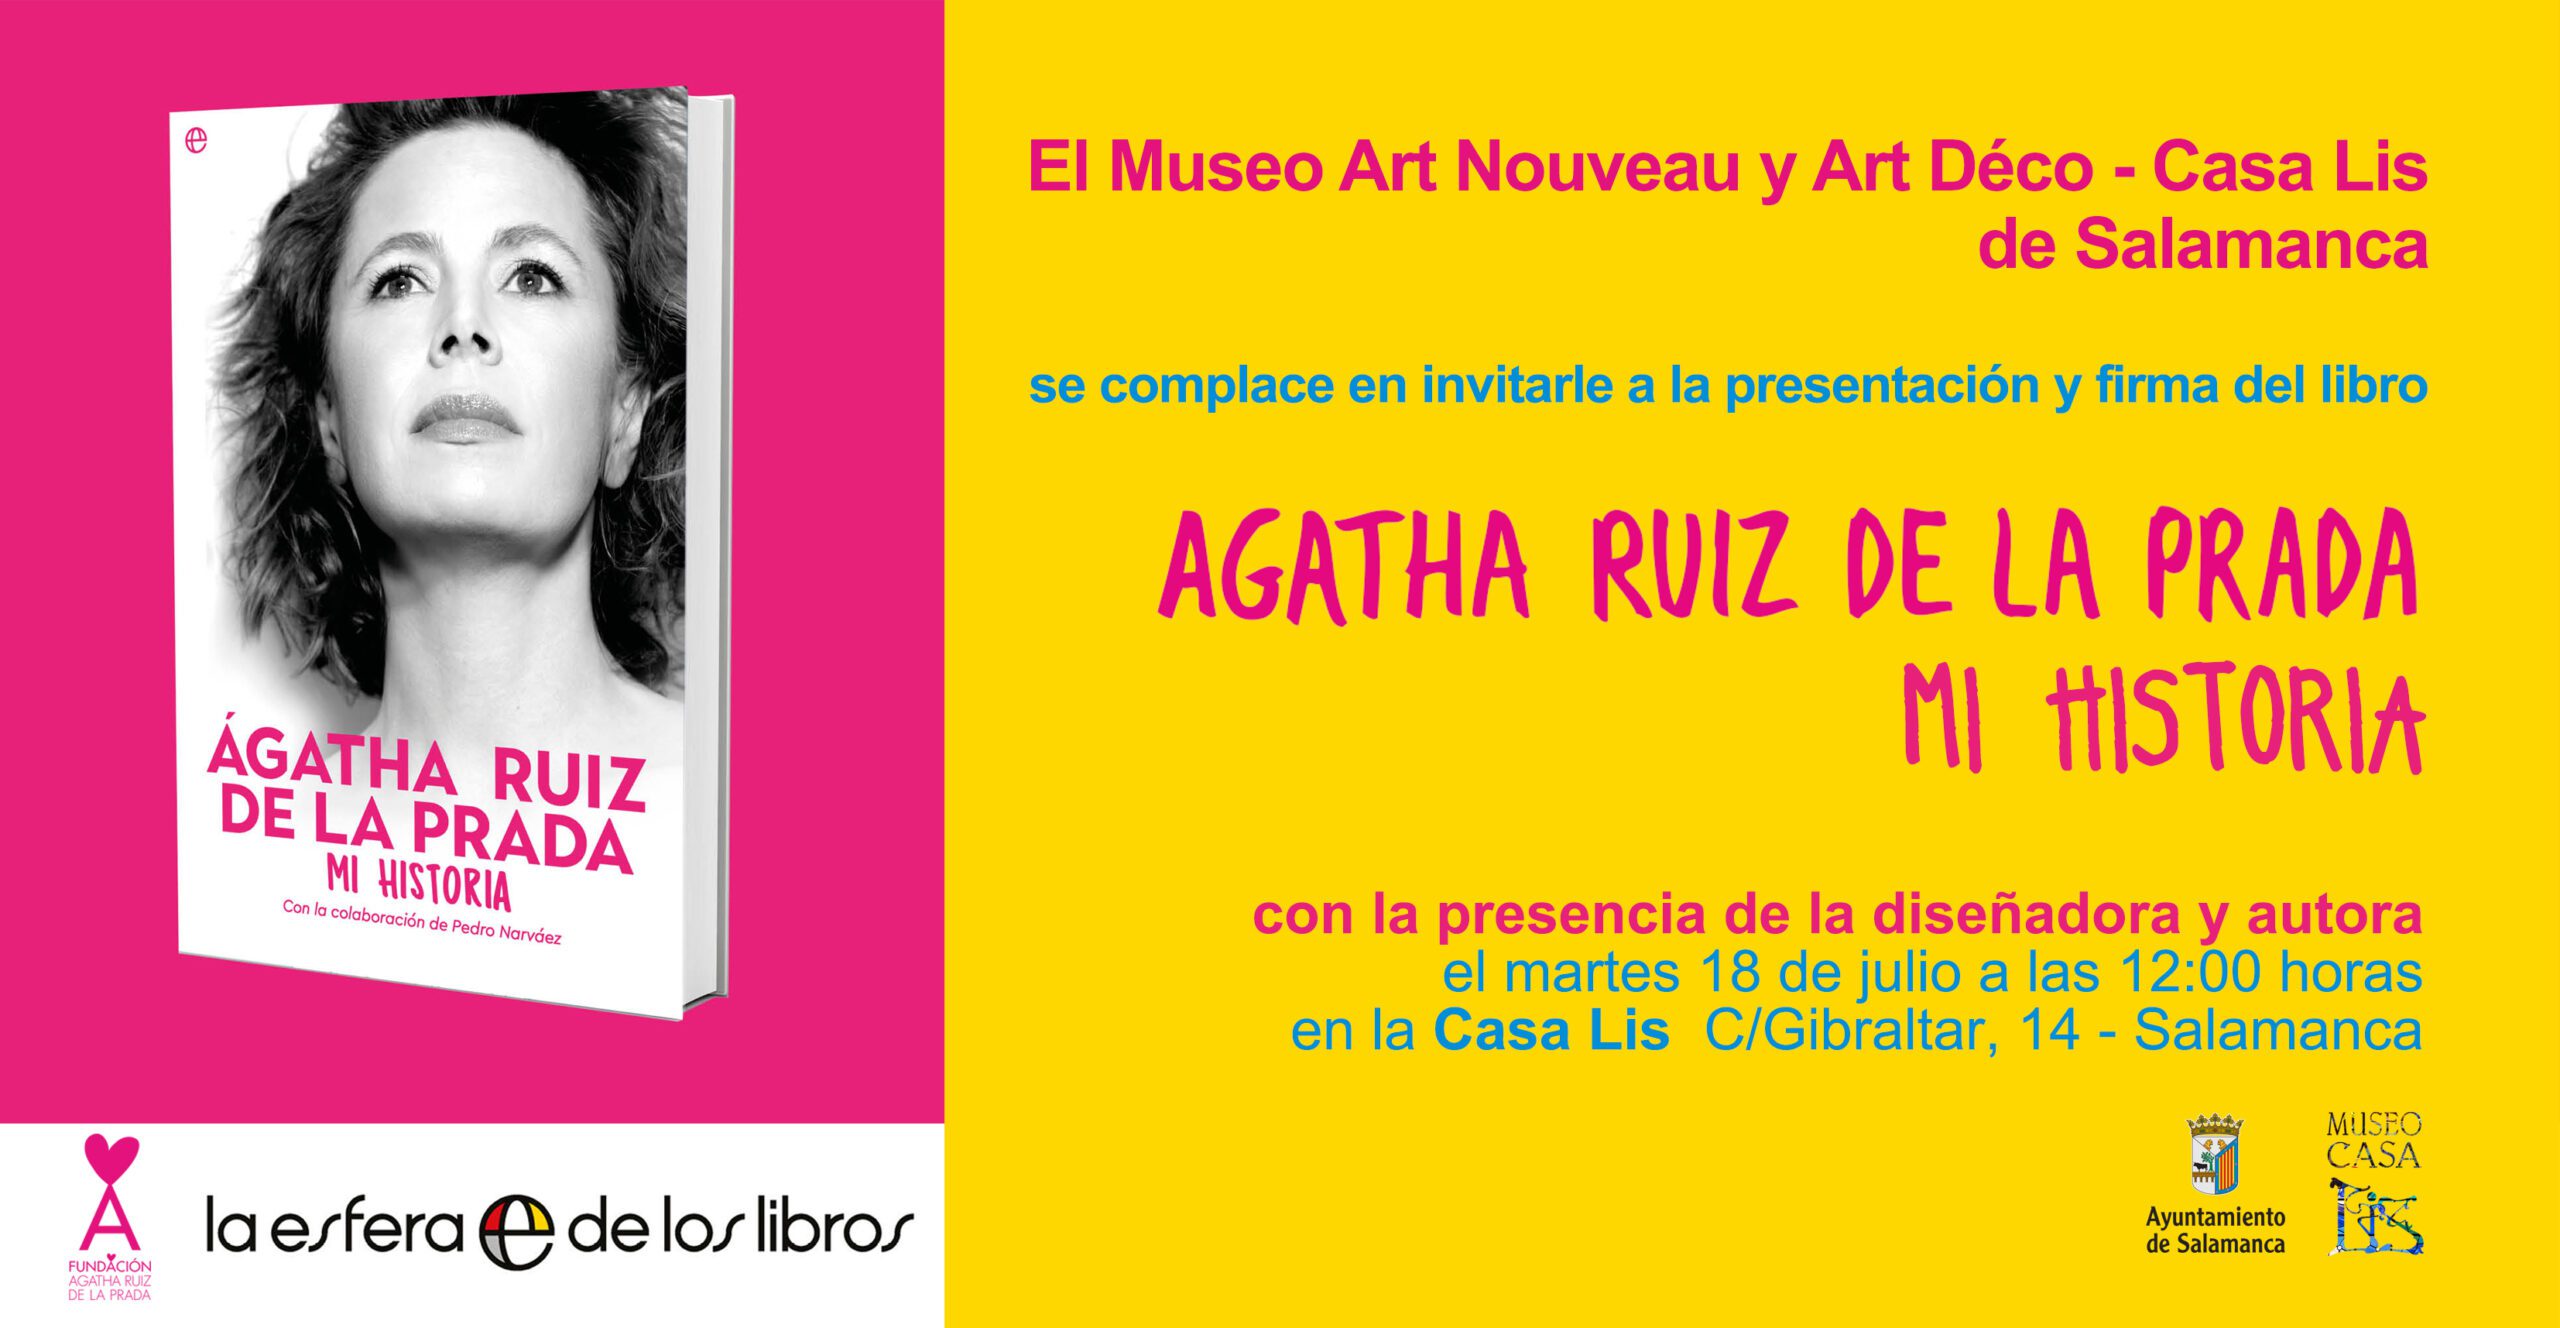 Invitación a la presentación del libro de Ágatha Ruiz de la Prada.